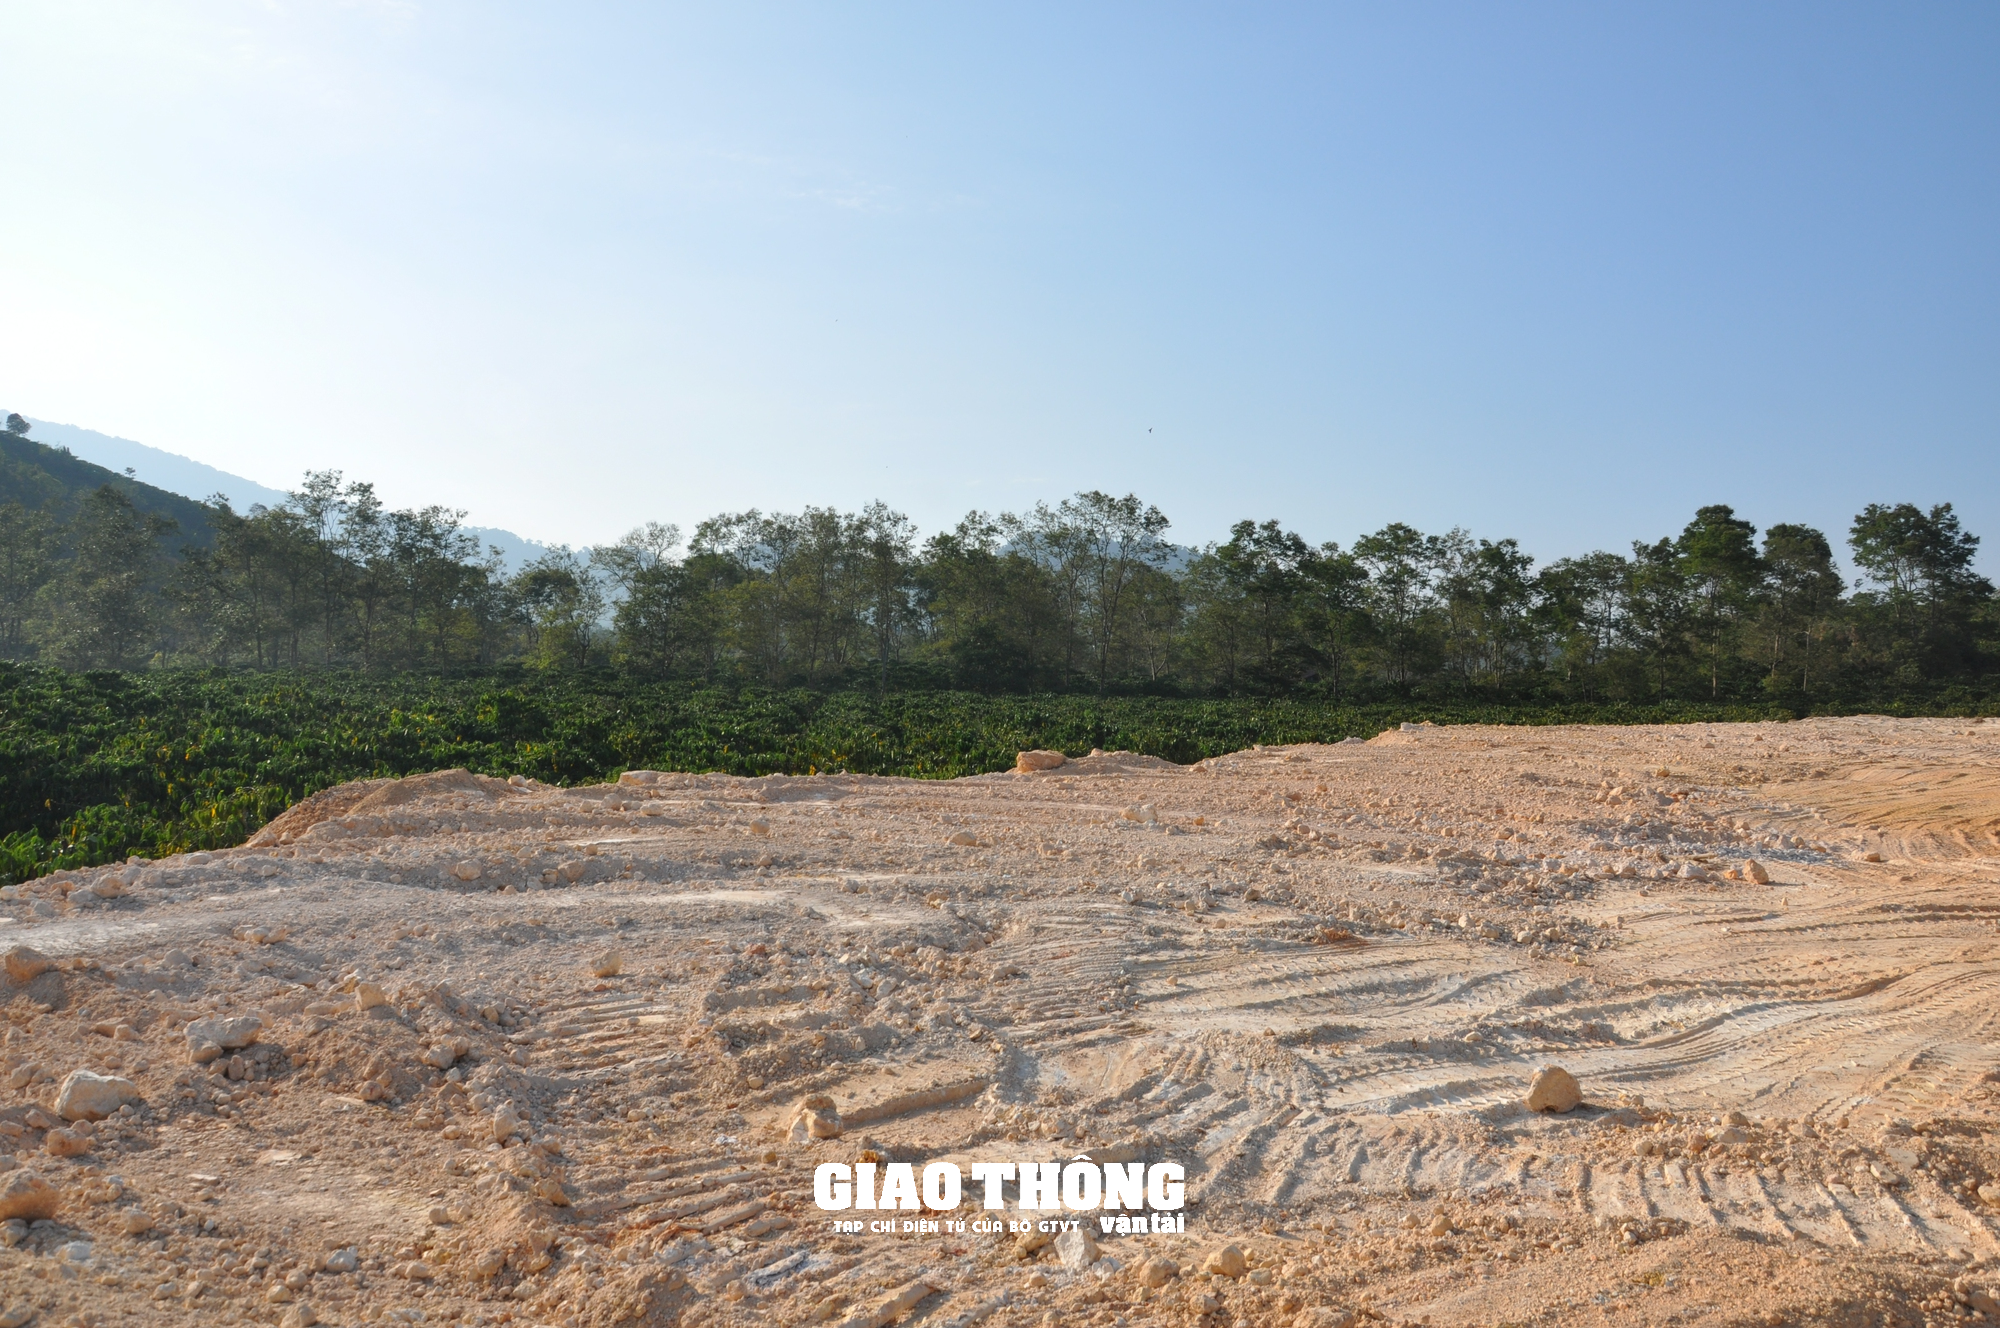 Nhức nhối nạn đào, san lấp mặt bằng xâm phạm hành lang tuyến QL27, ĐT724 ở Lâm Đồng - Ảnh 9.